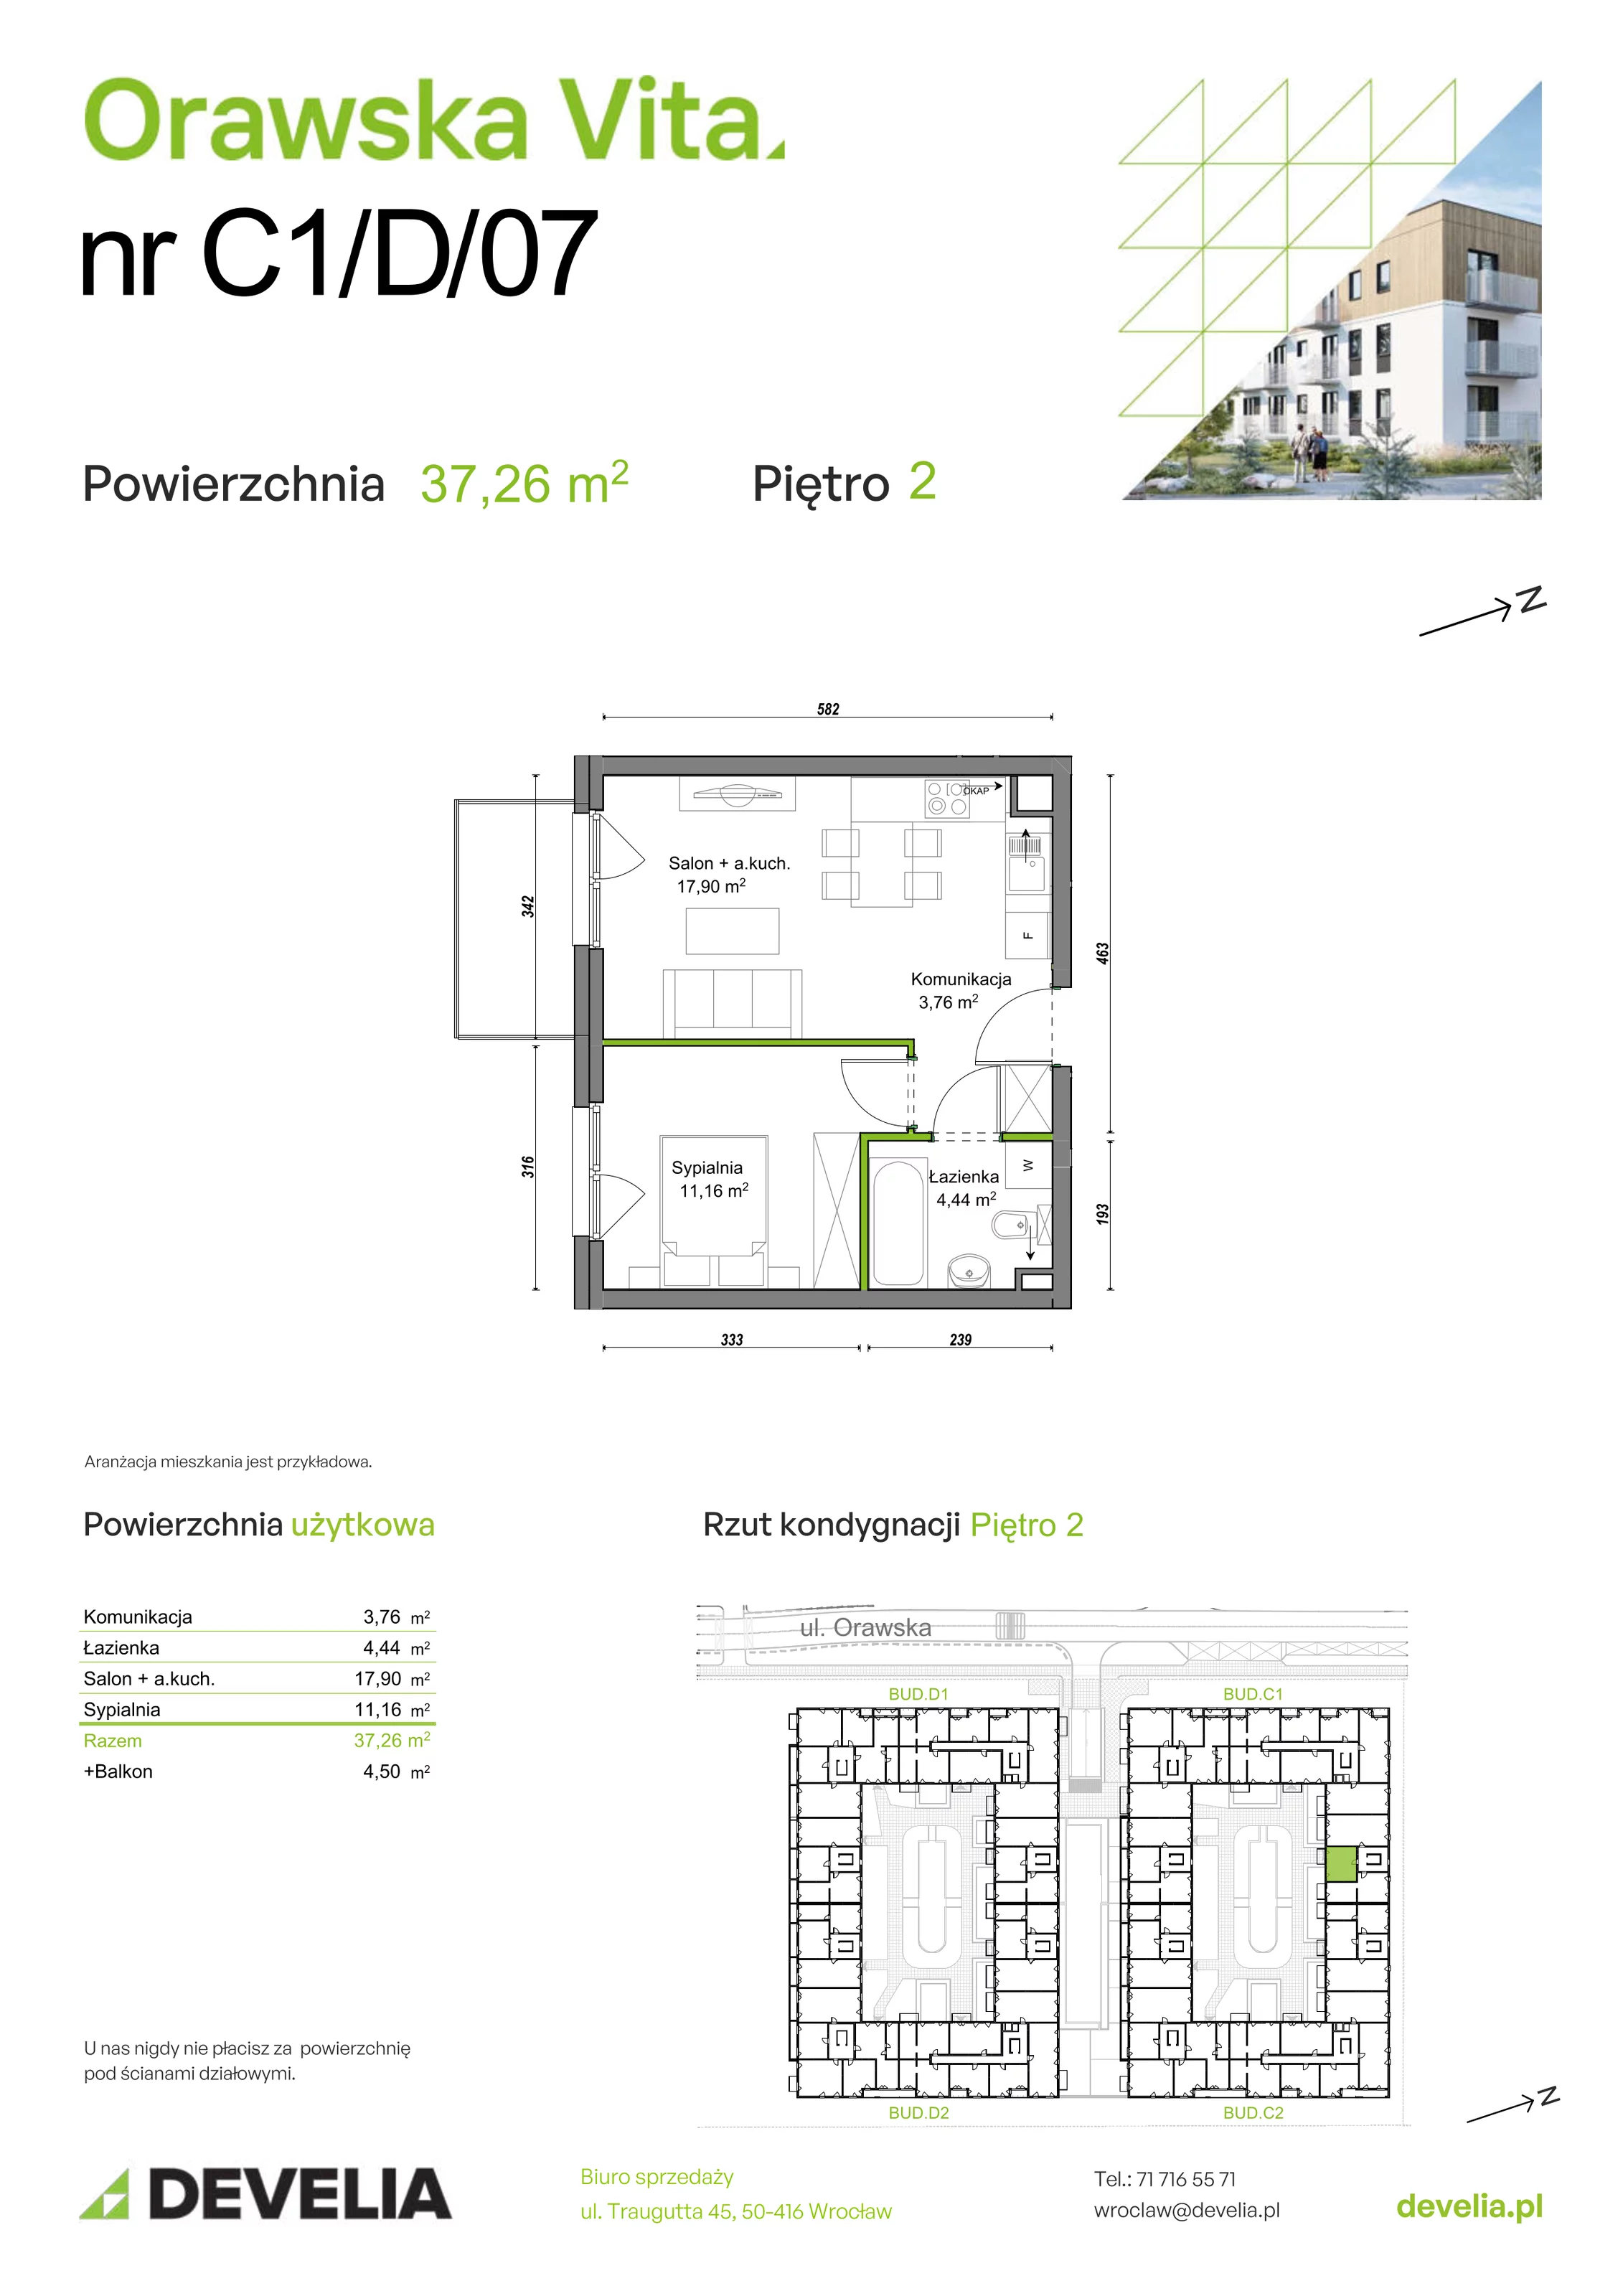 Mieszkanie 37,26 m², piętro 2, oferta nr C1/D/07, Orawska Vita, Wrocław, Ołtaszyn, Krzyki, ul. Orawska 73